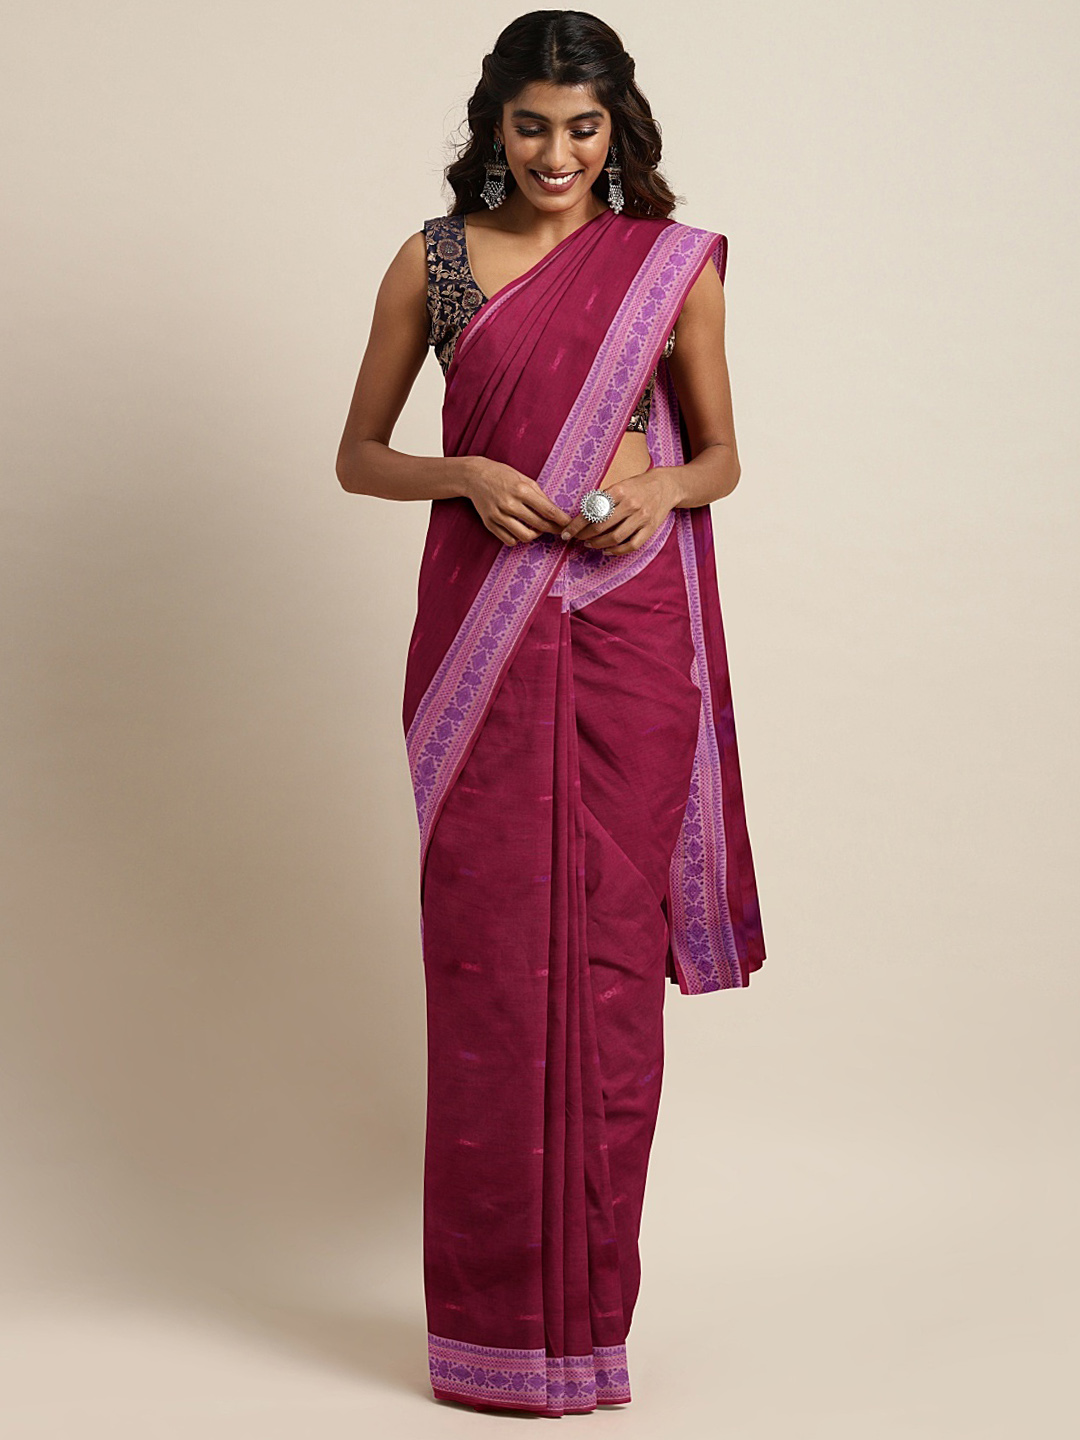 The Chennai Silks Classicate Red Woven Design Pure Cotton Saree Price in India